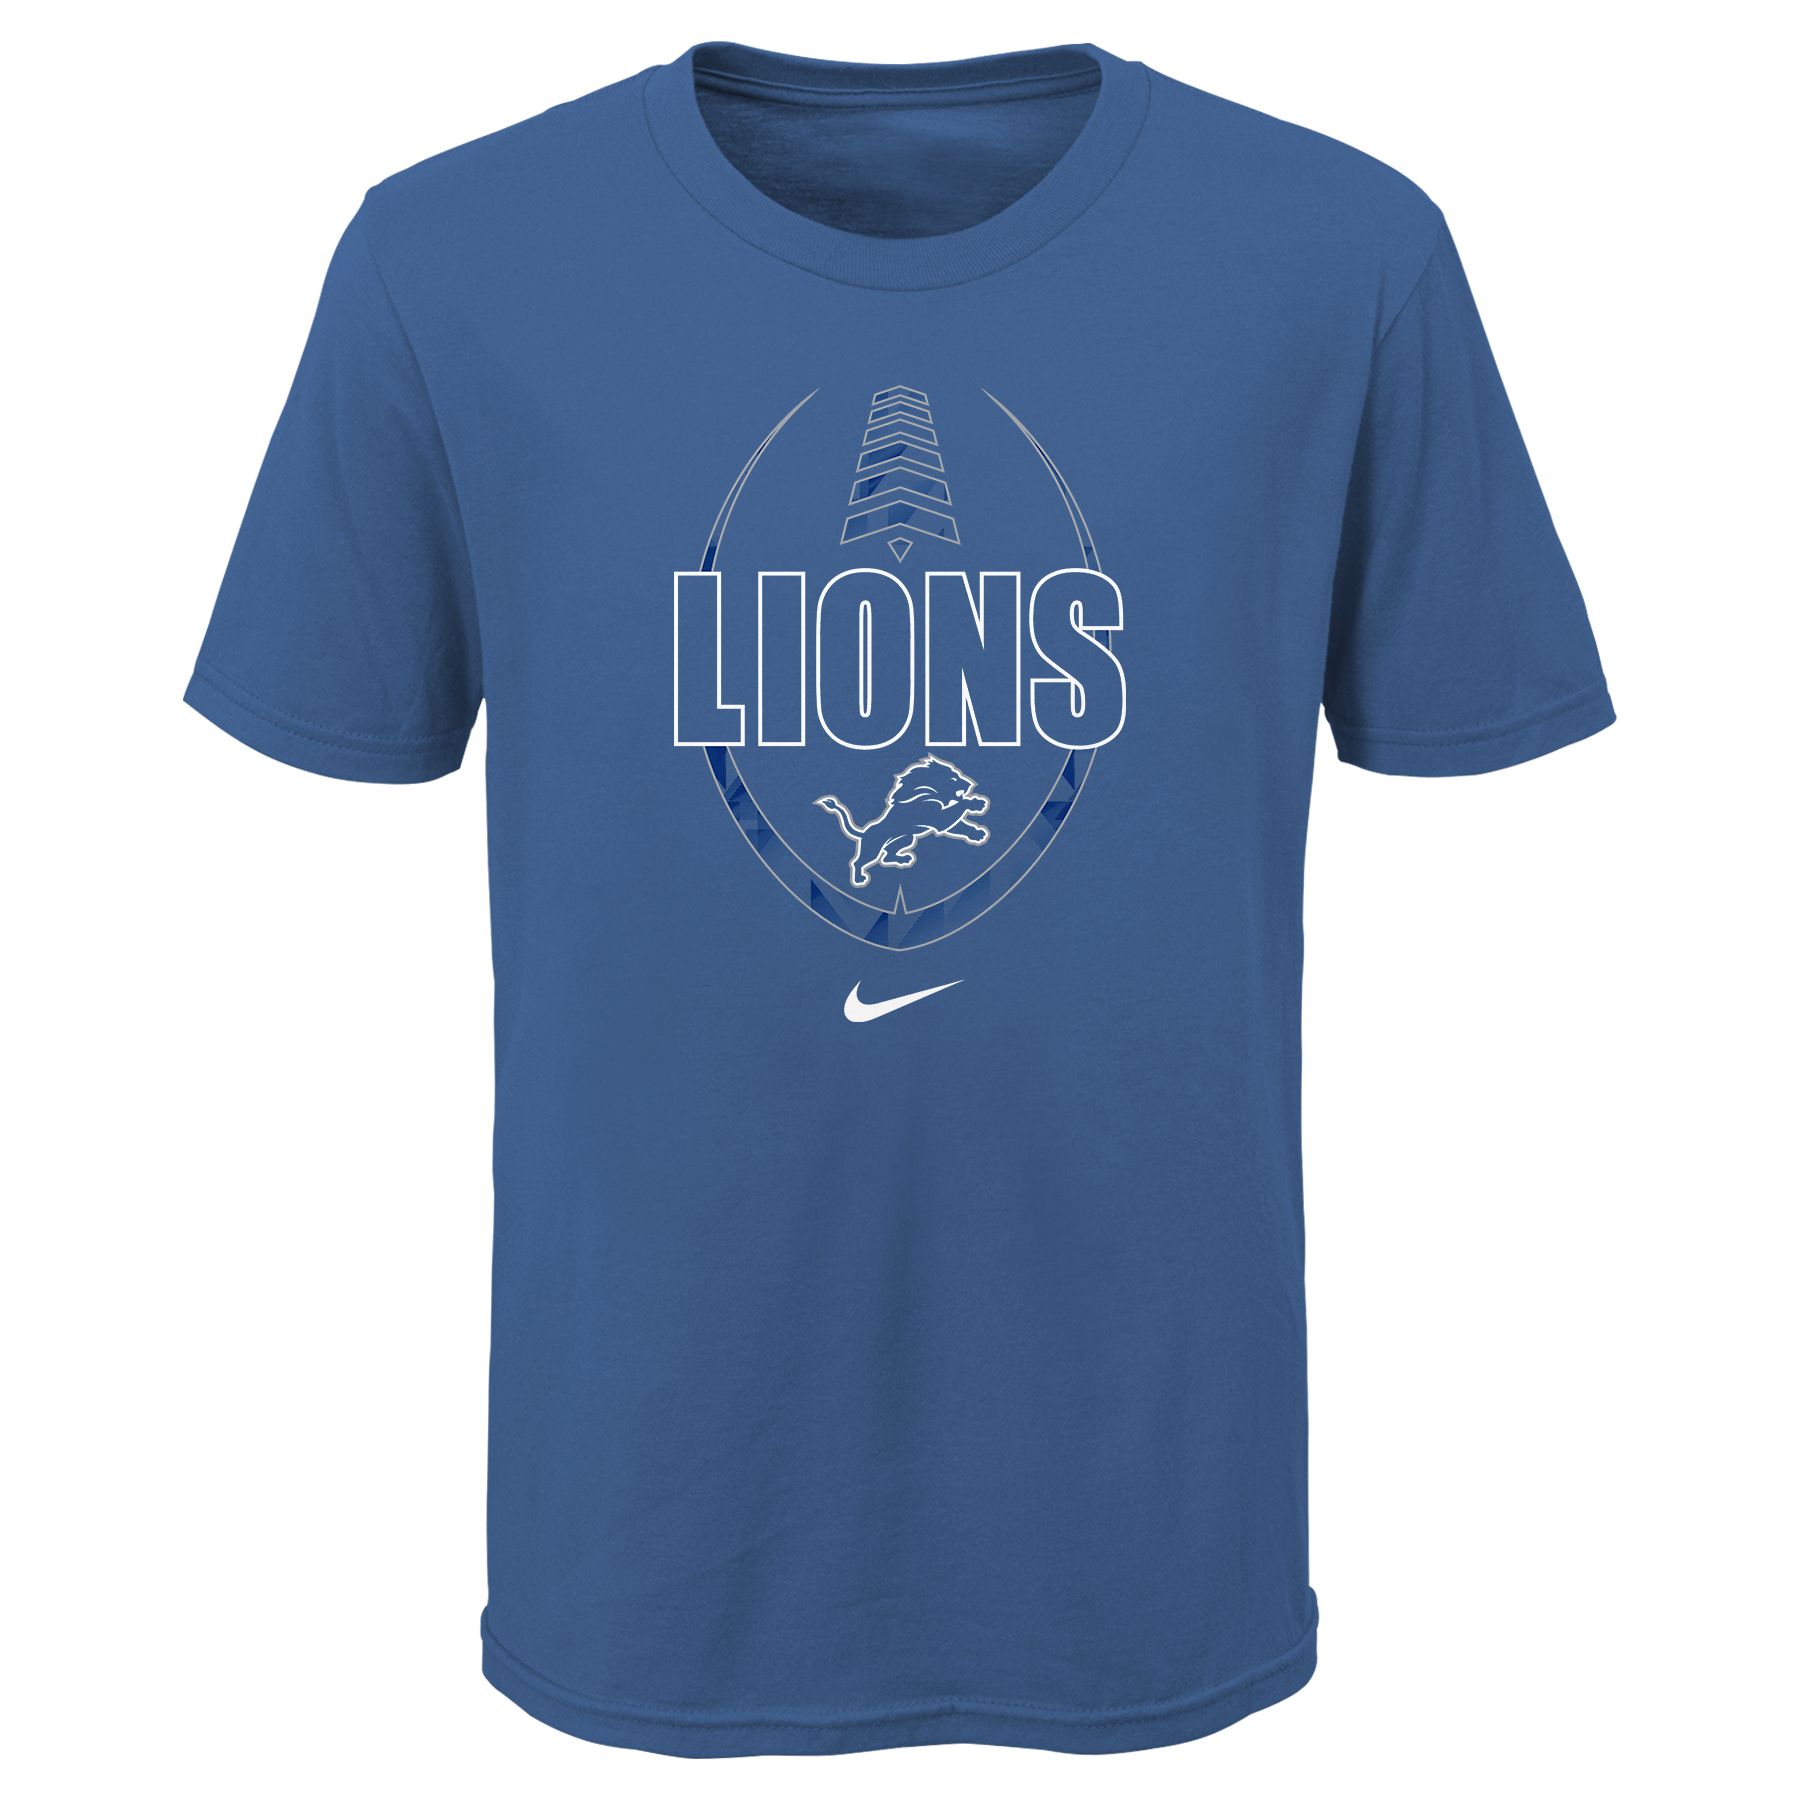 Detroit Lions kids T shirt